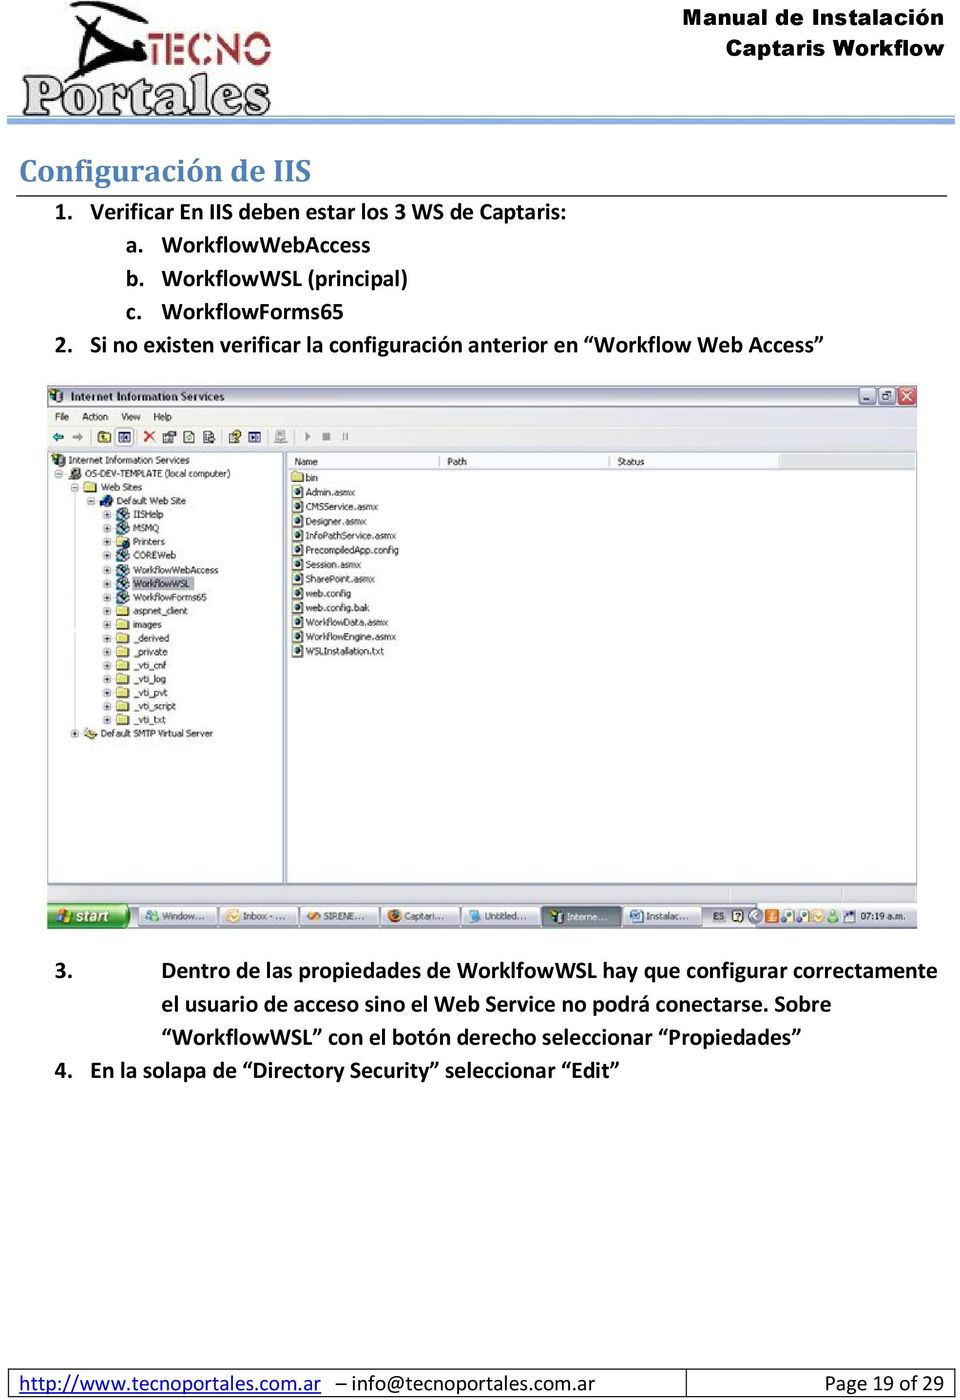 Dentro de las propiedades de WorklfowWSL hay que configurar correctamente el usuario de acceso sino el Web Service no podrá conectarse.